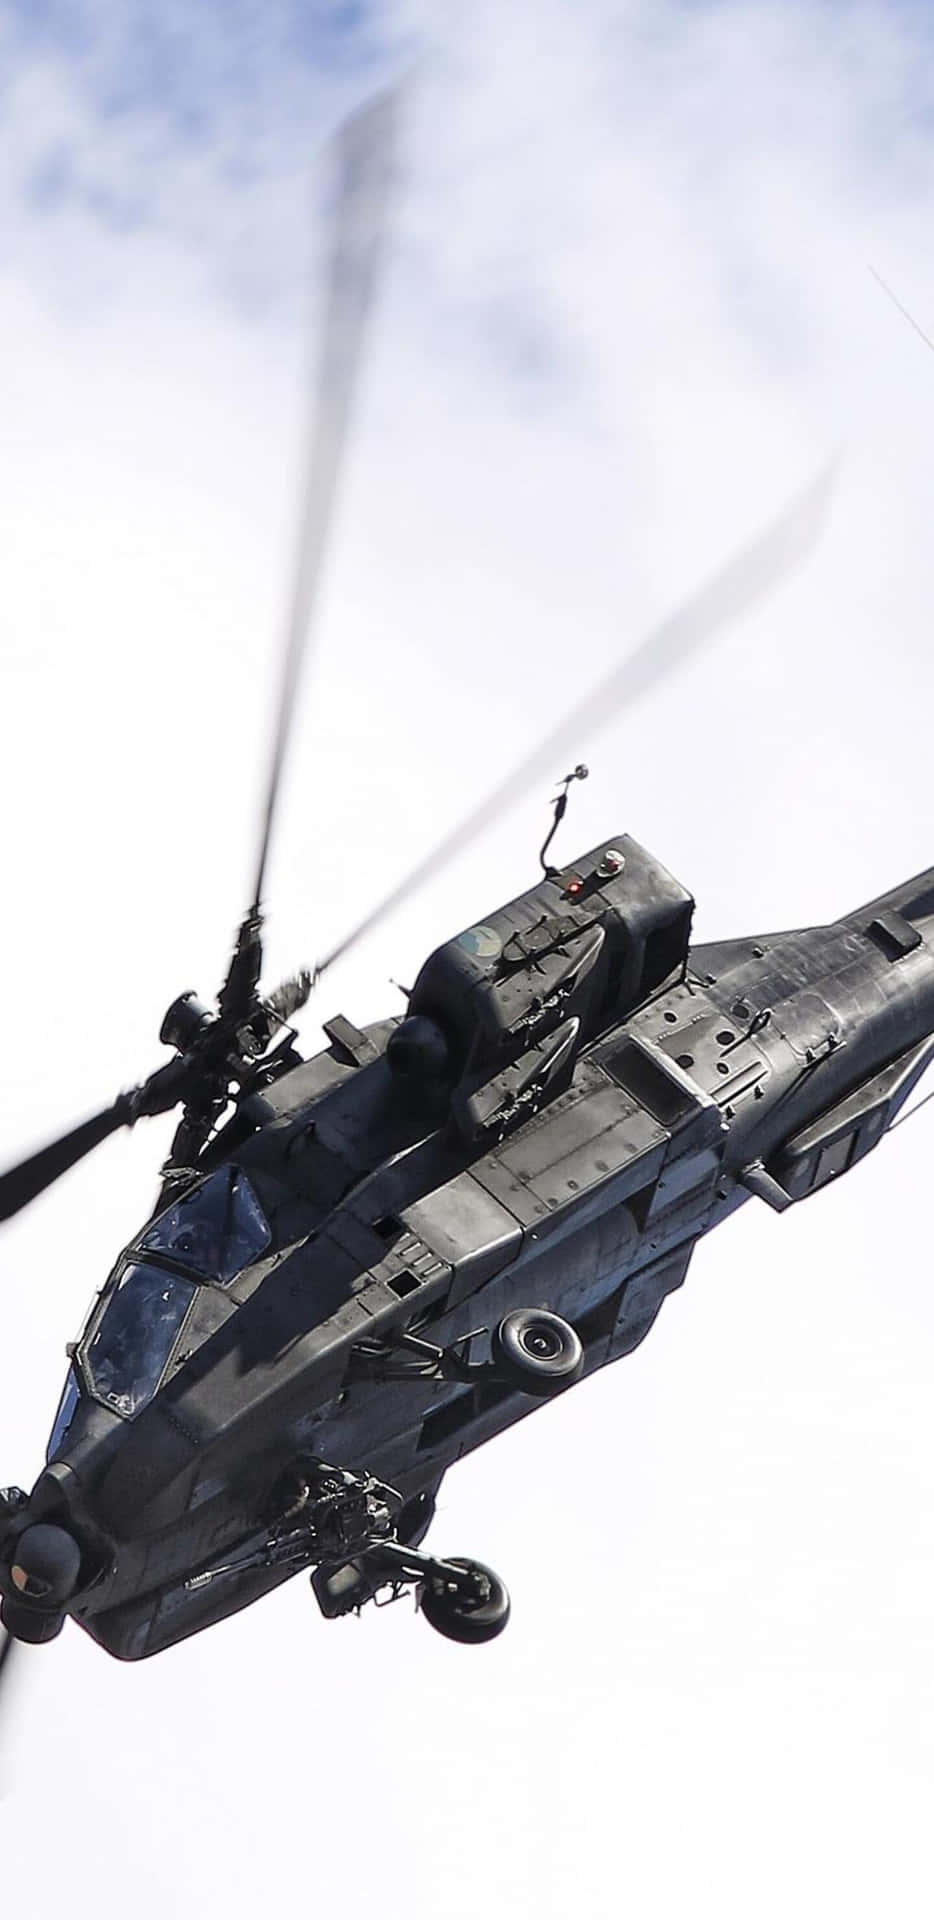 Pixel3xl Fundo De Tela De Helicópteros Céu Claro Cinza Boeing Ah-64 Apache.